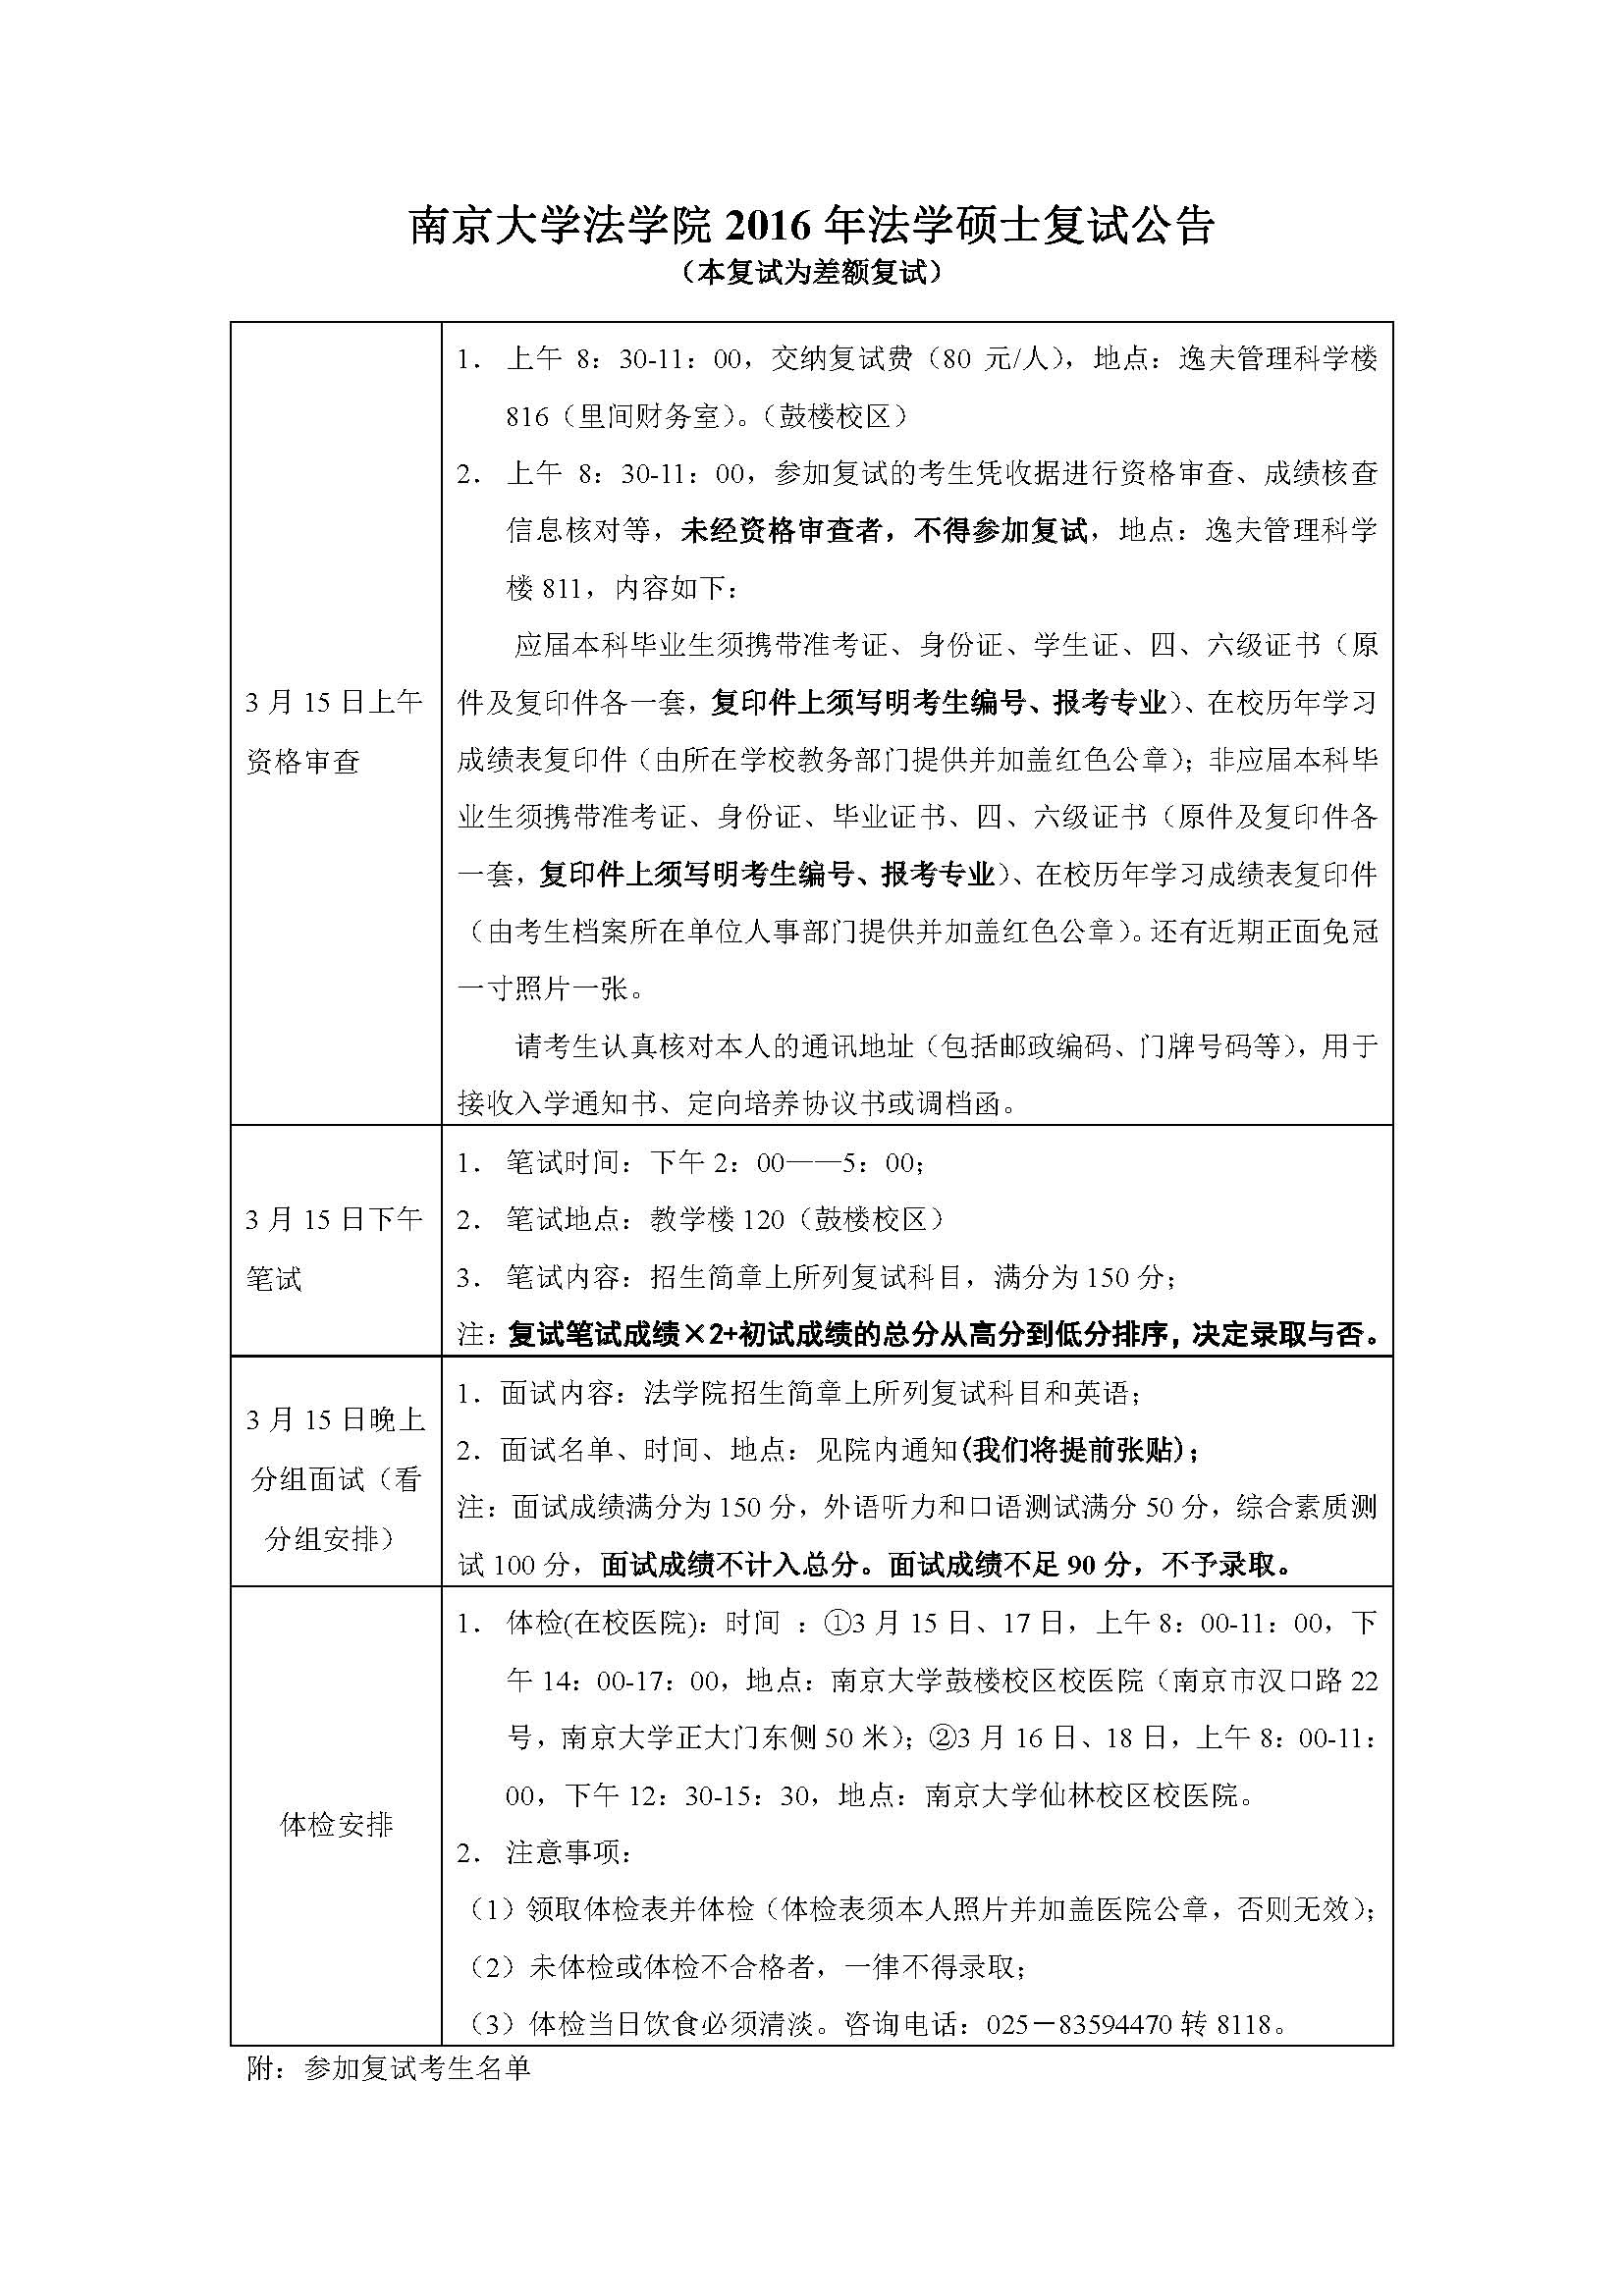 南京大学2016年法学院法学硕士复试公告及参加复试考生名单